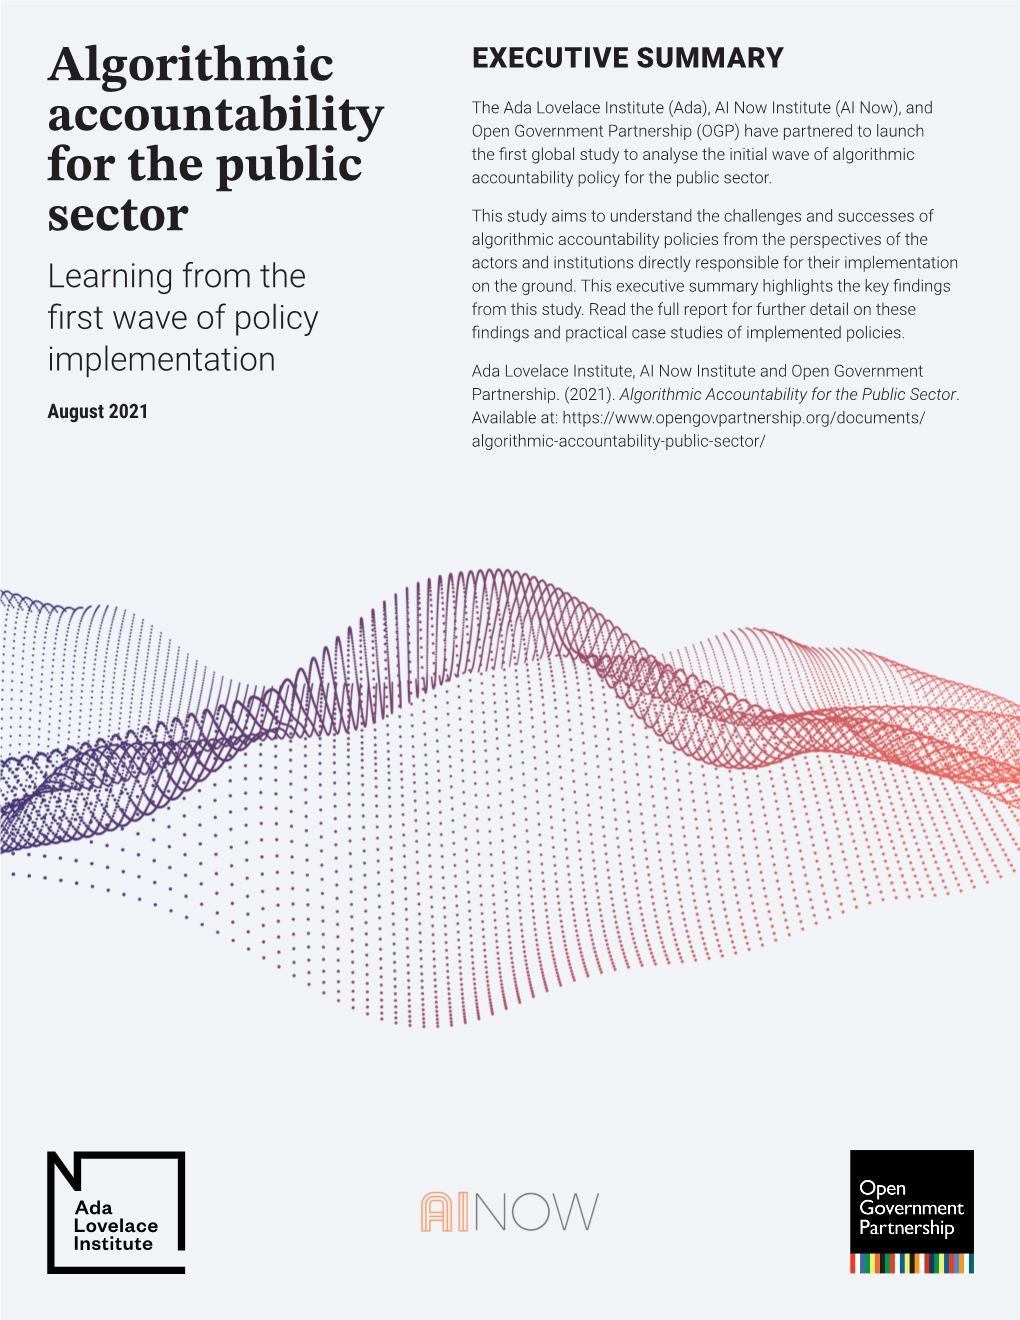 Algorithmic Accountability for the Public Sector Executive Summary